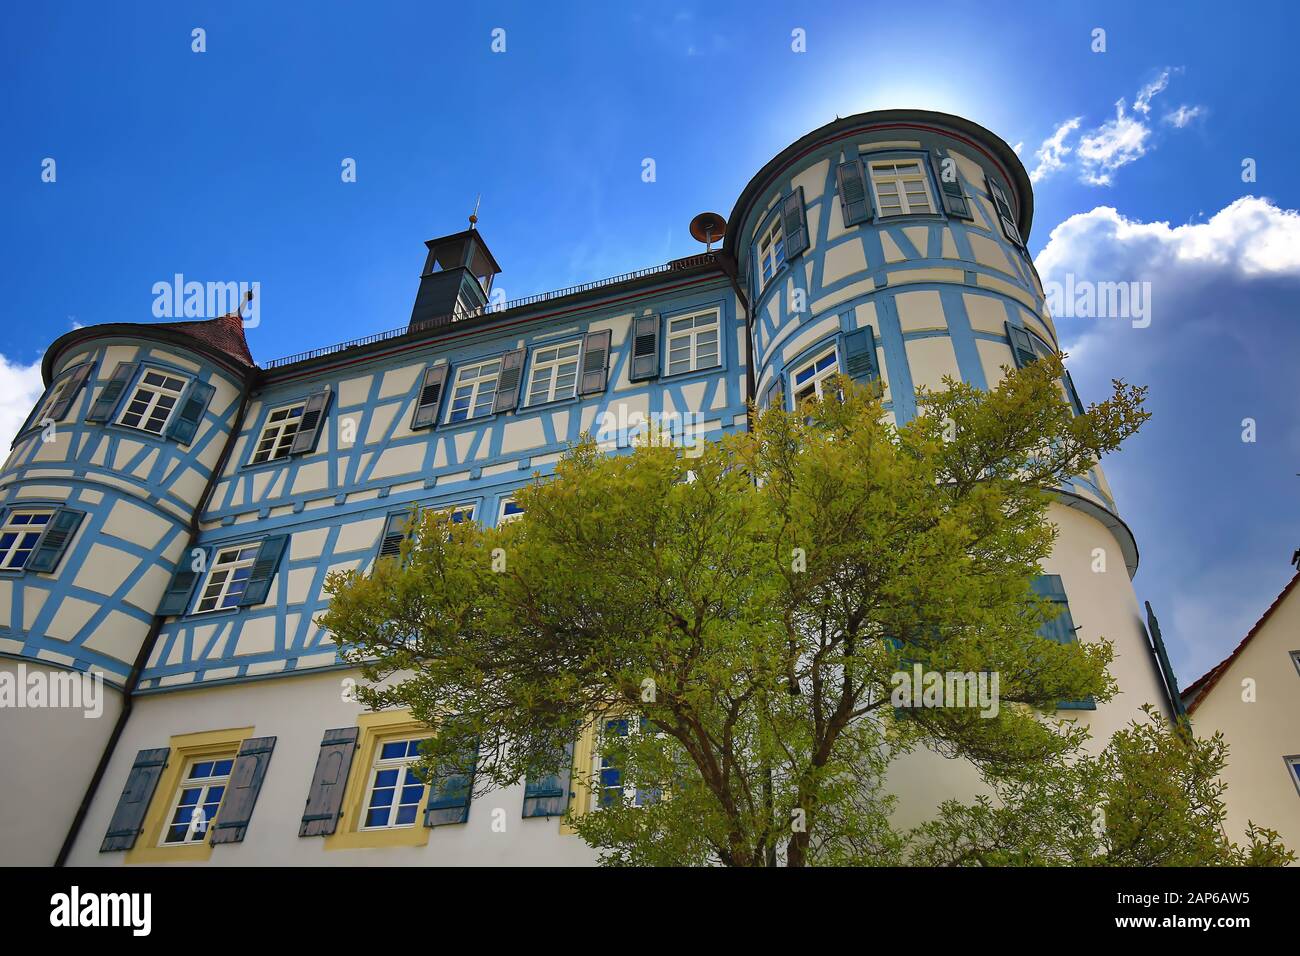 Obersontheim es una ciudad que vale la pena visitar en Alemania Foto de stock